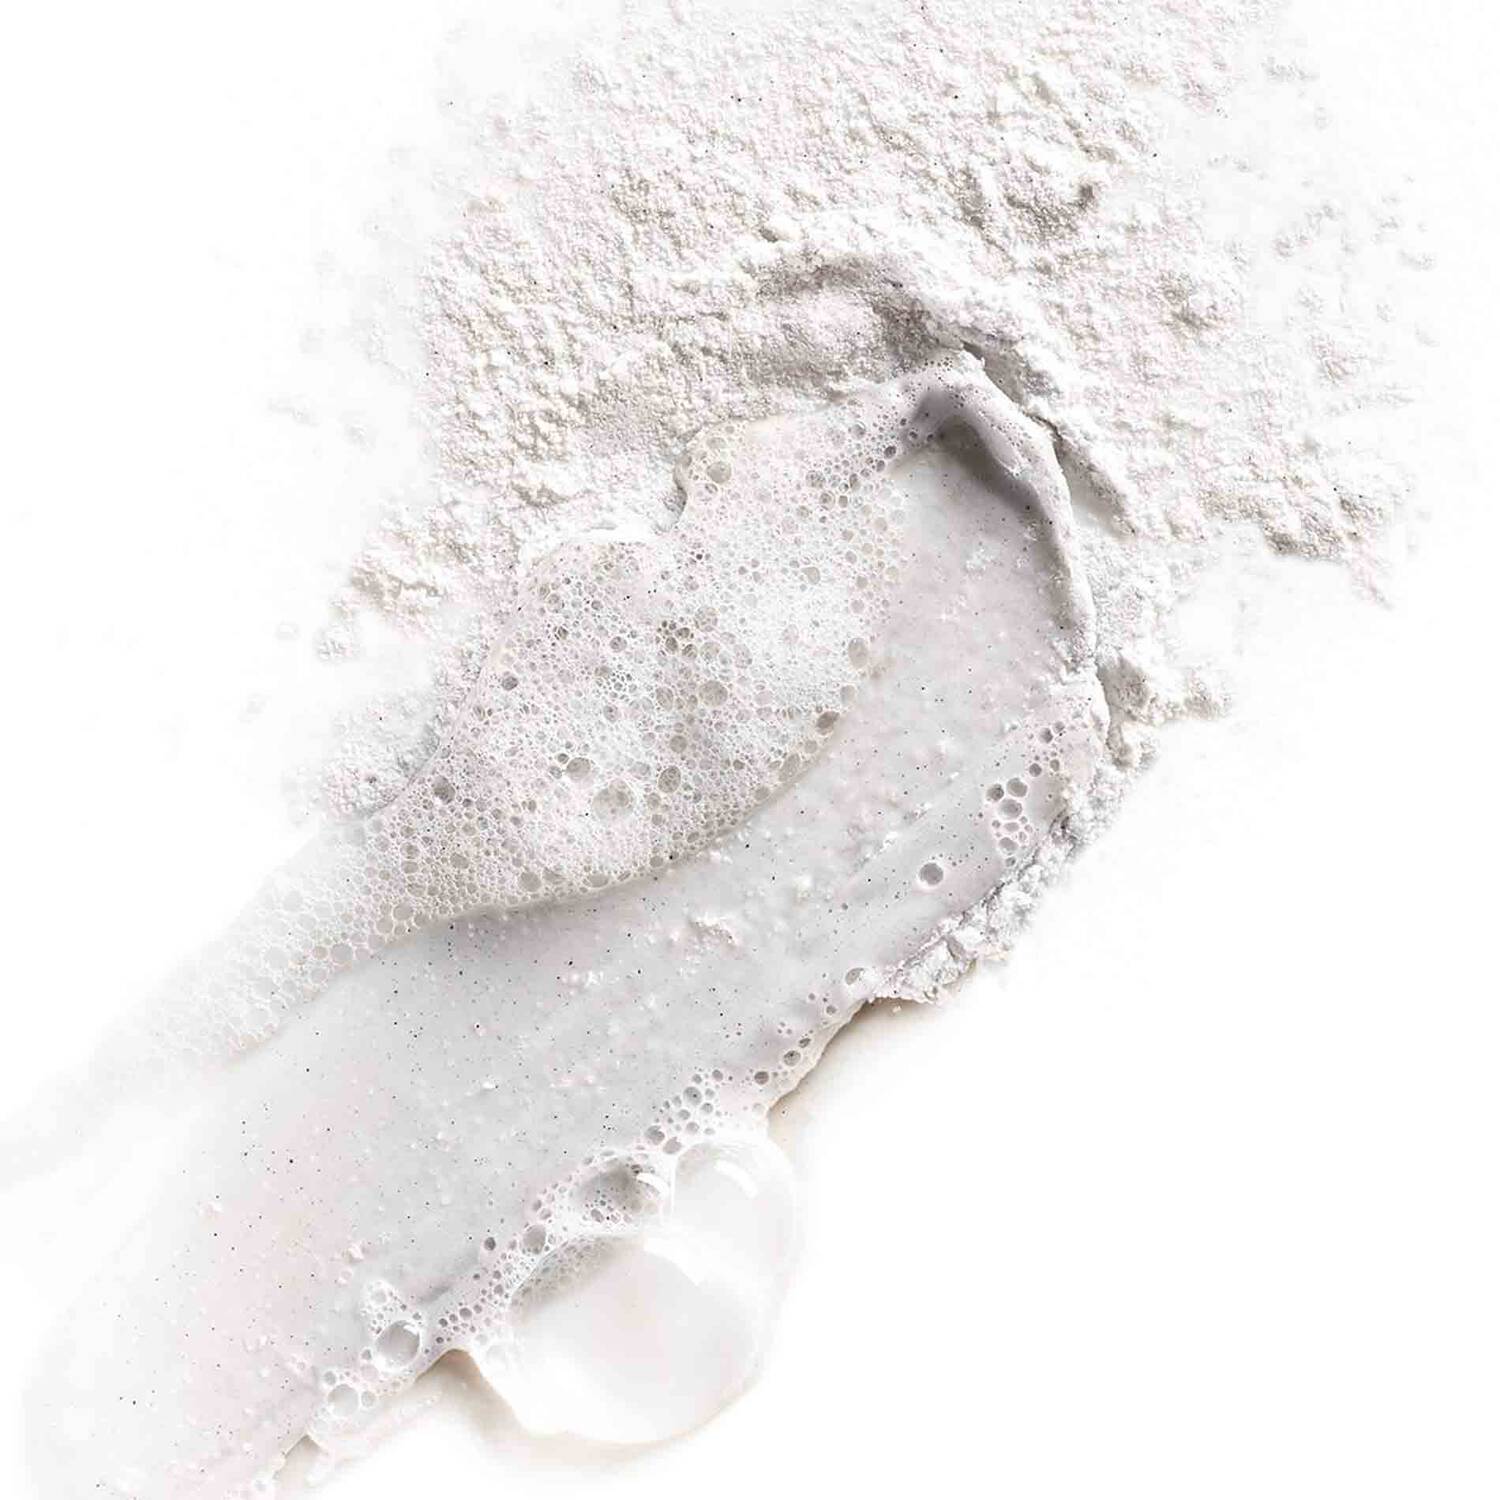  亞瑪遜白泥磨砂潔面粉 